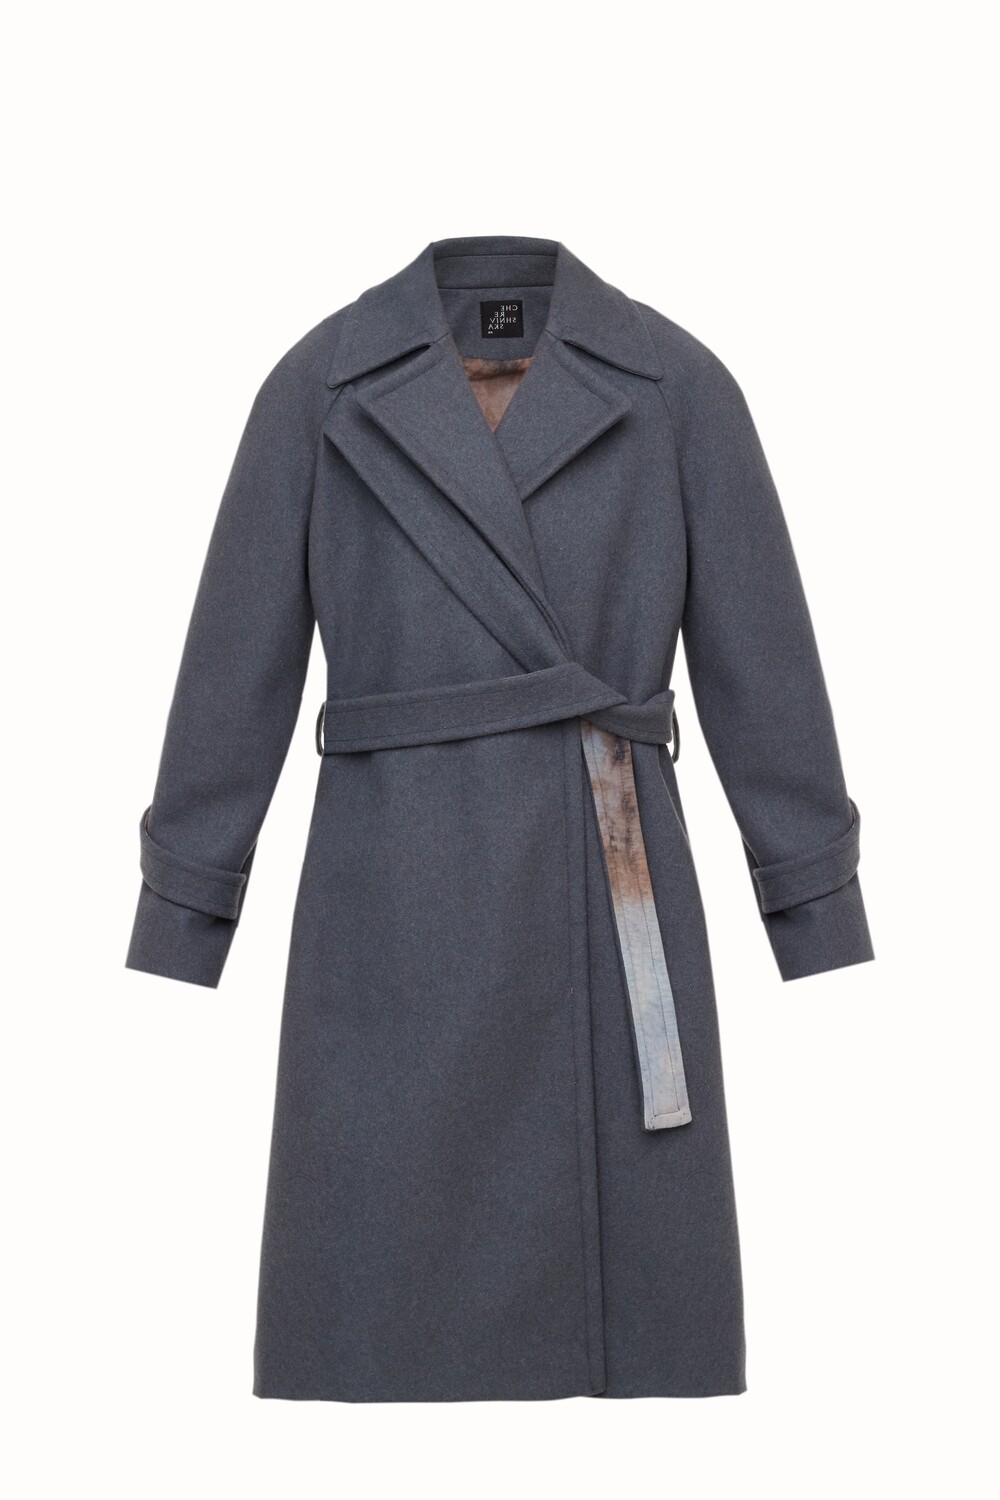 Grey overcoat